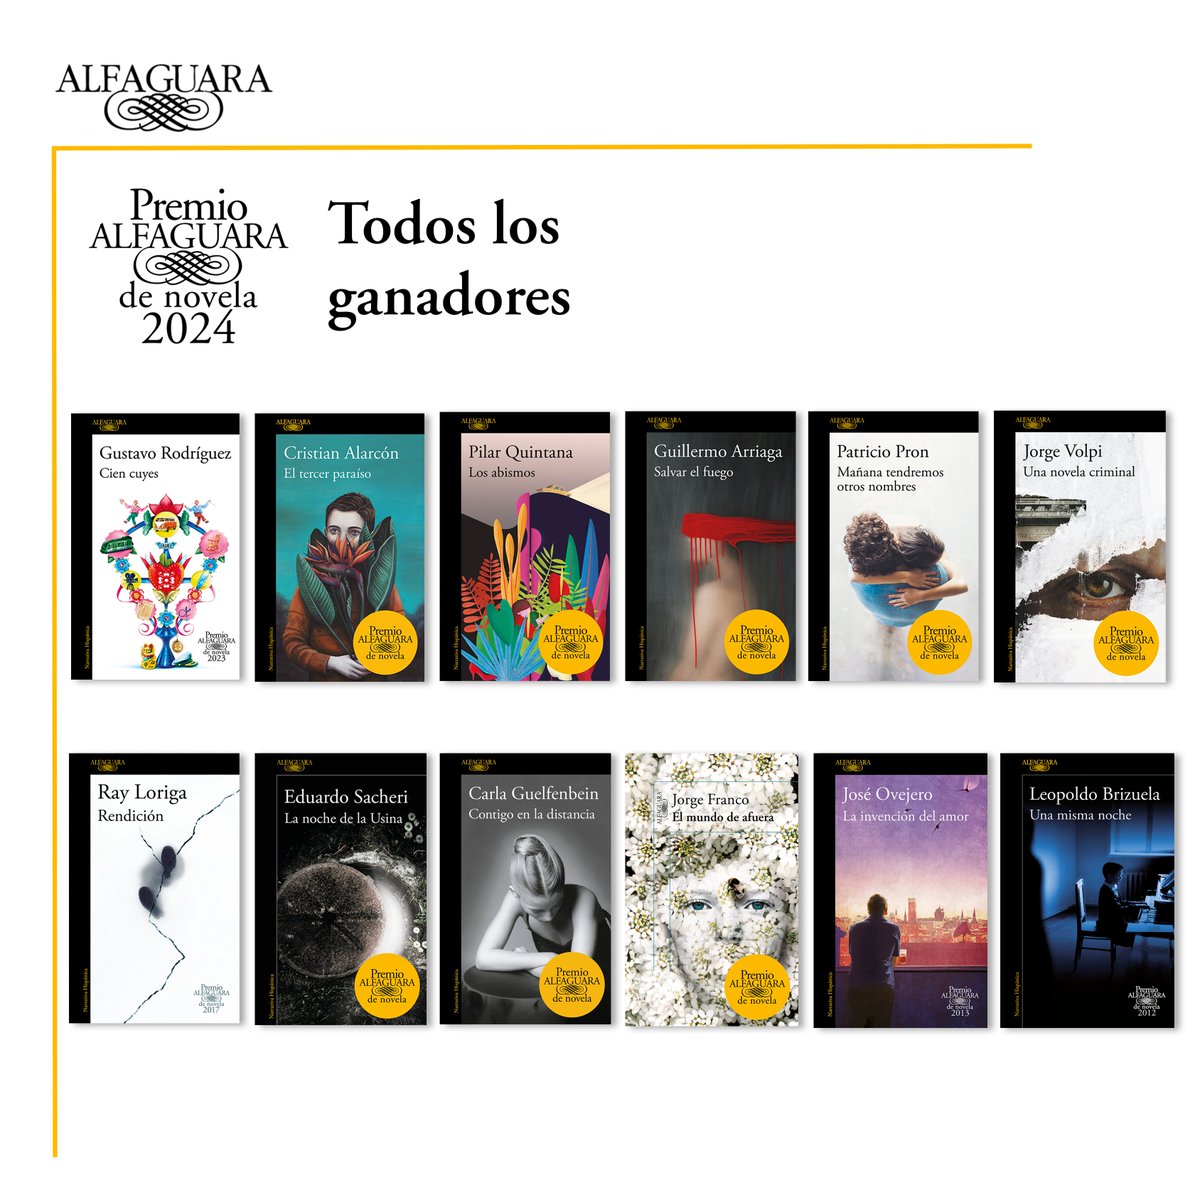 El 25 de enero se celebra el Premio Alfaguara 2024 y, mientras esperamos a conocer al ganador de este año en el que además se cumple el 60 aniversario de Alfaguara, haremos repaso por todas las obras ganadoras.

¿Cuáles has leído?

#PremioAlfaguara #60AniversarioAlfaguara